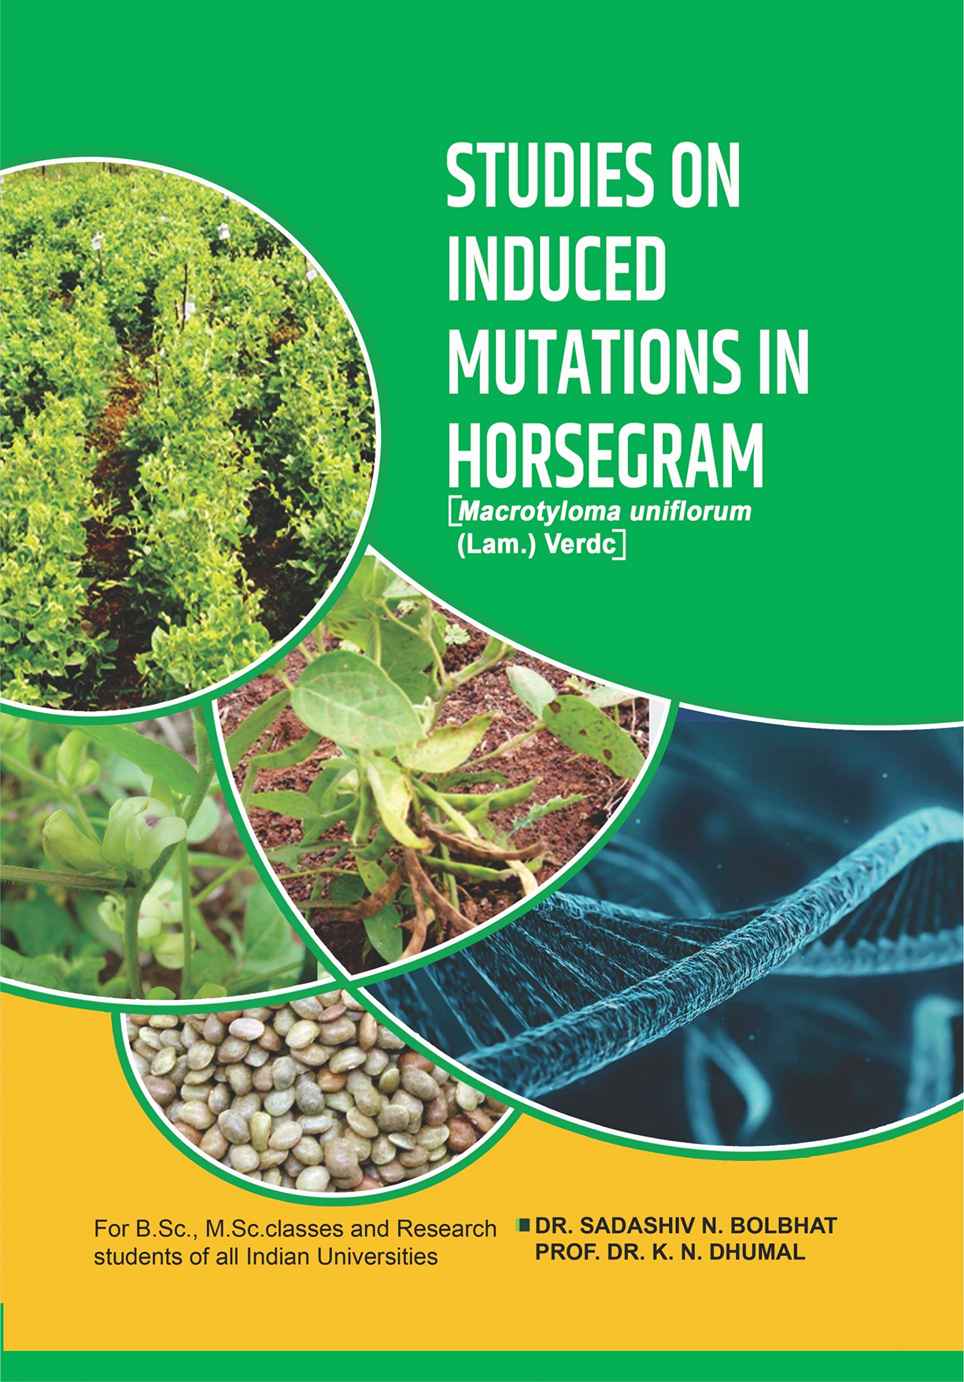 Studies On Induced Mutations In Horsegram [macrotyloma Uniflorum (lam.) Verdc]